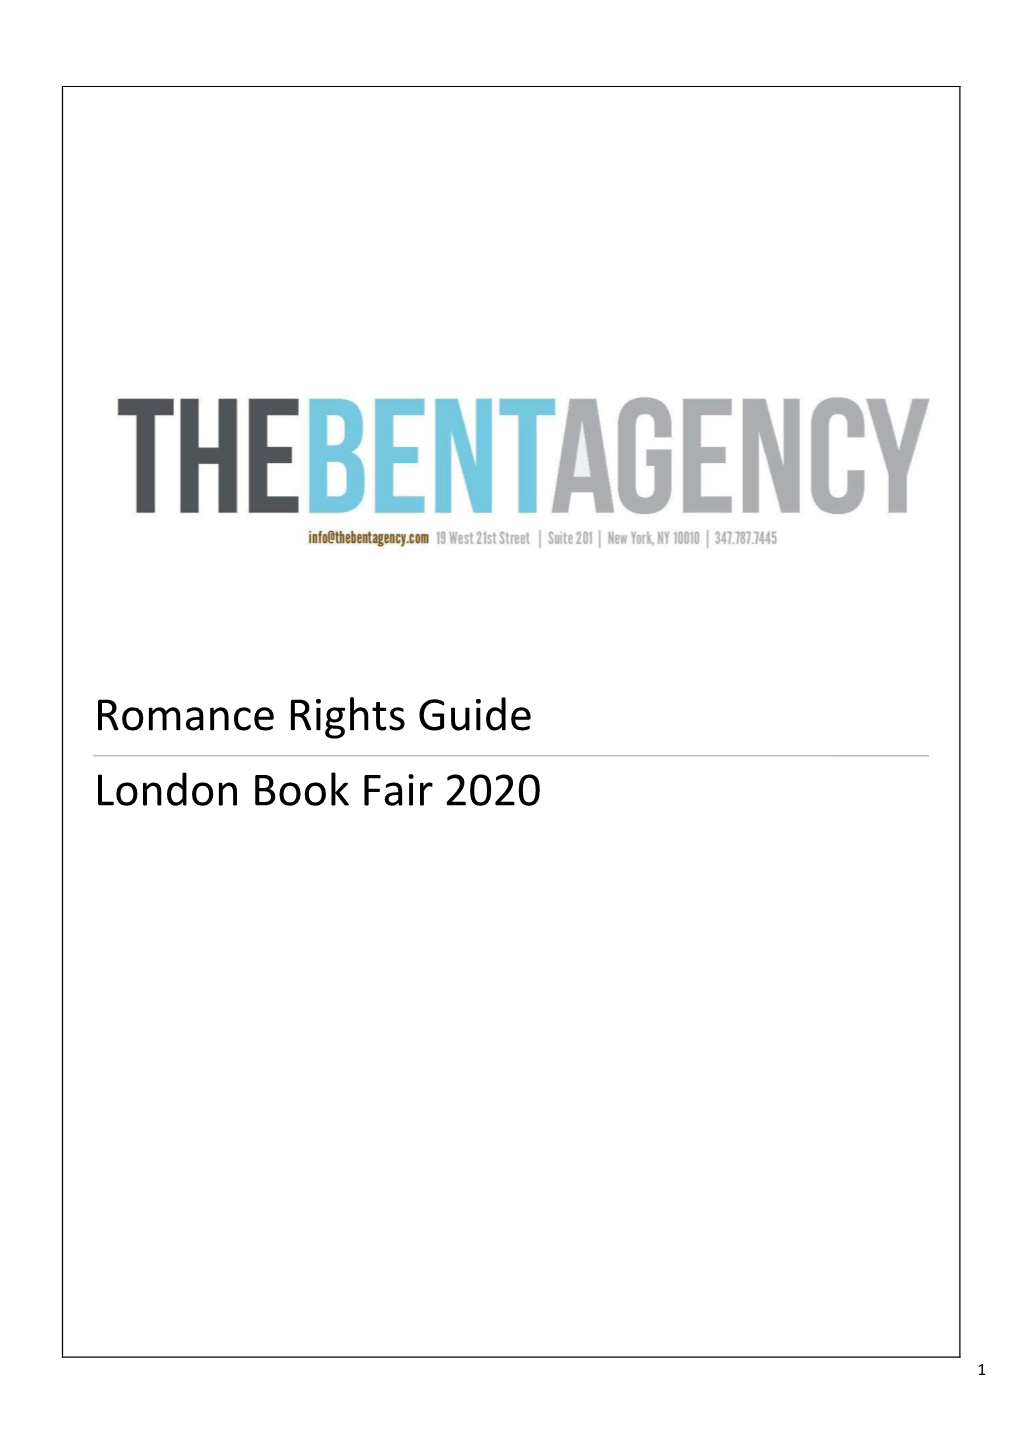 Romance Rights Guide London Book Fair 2020